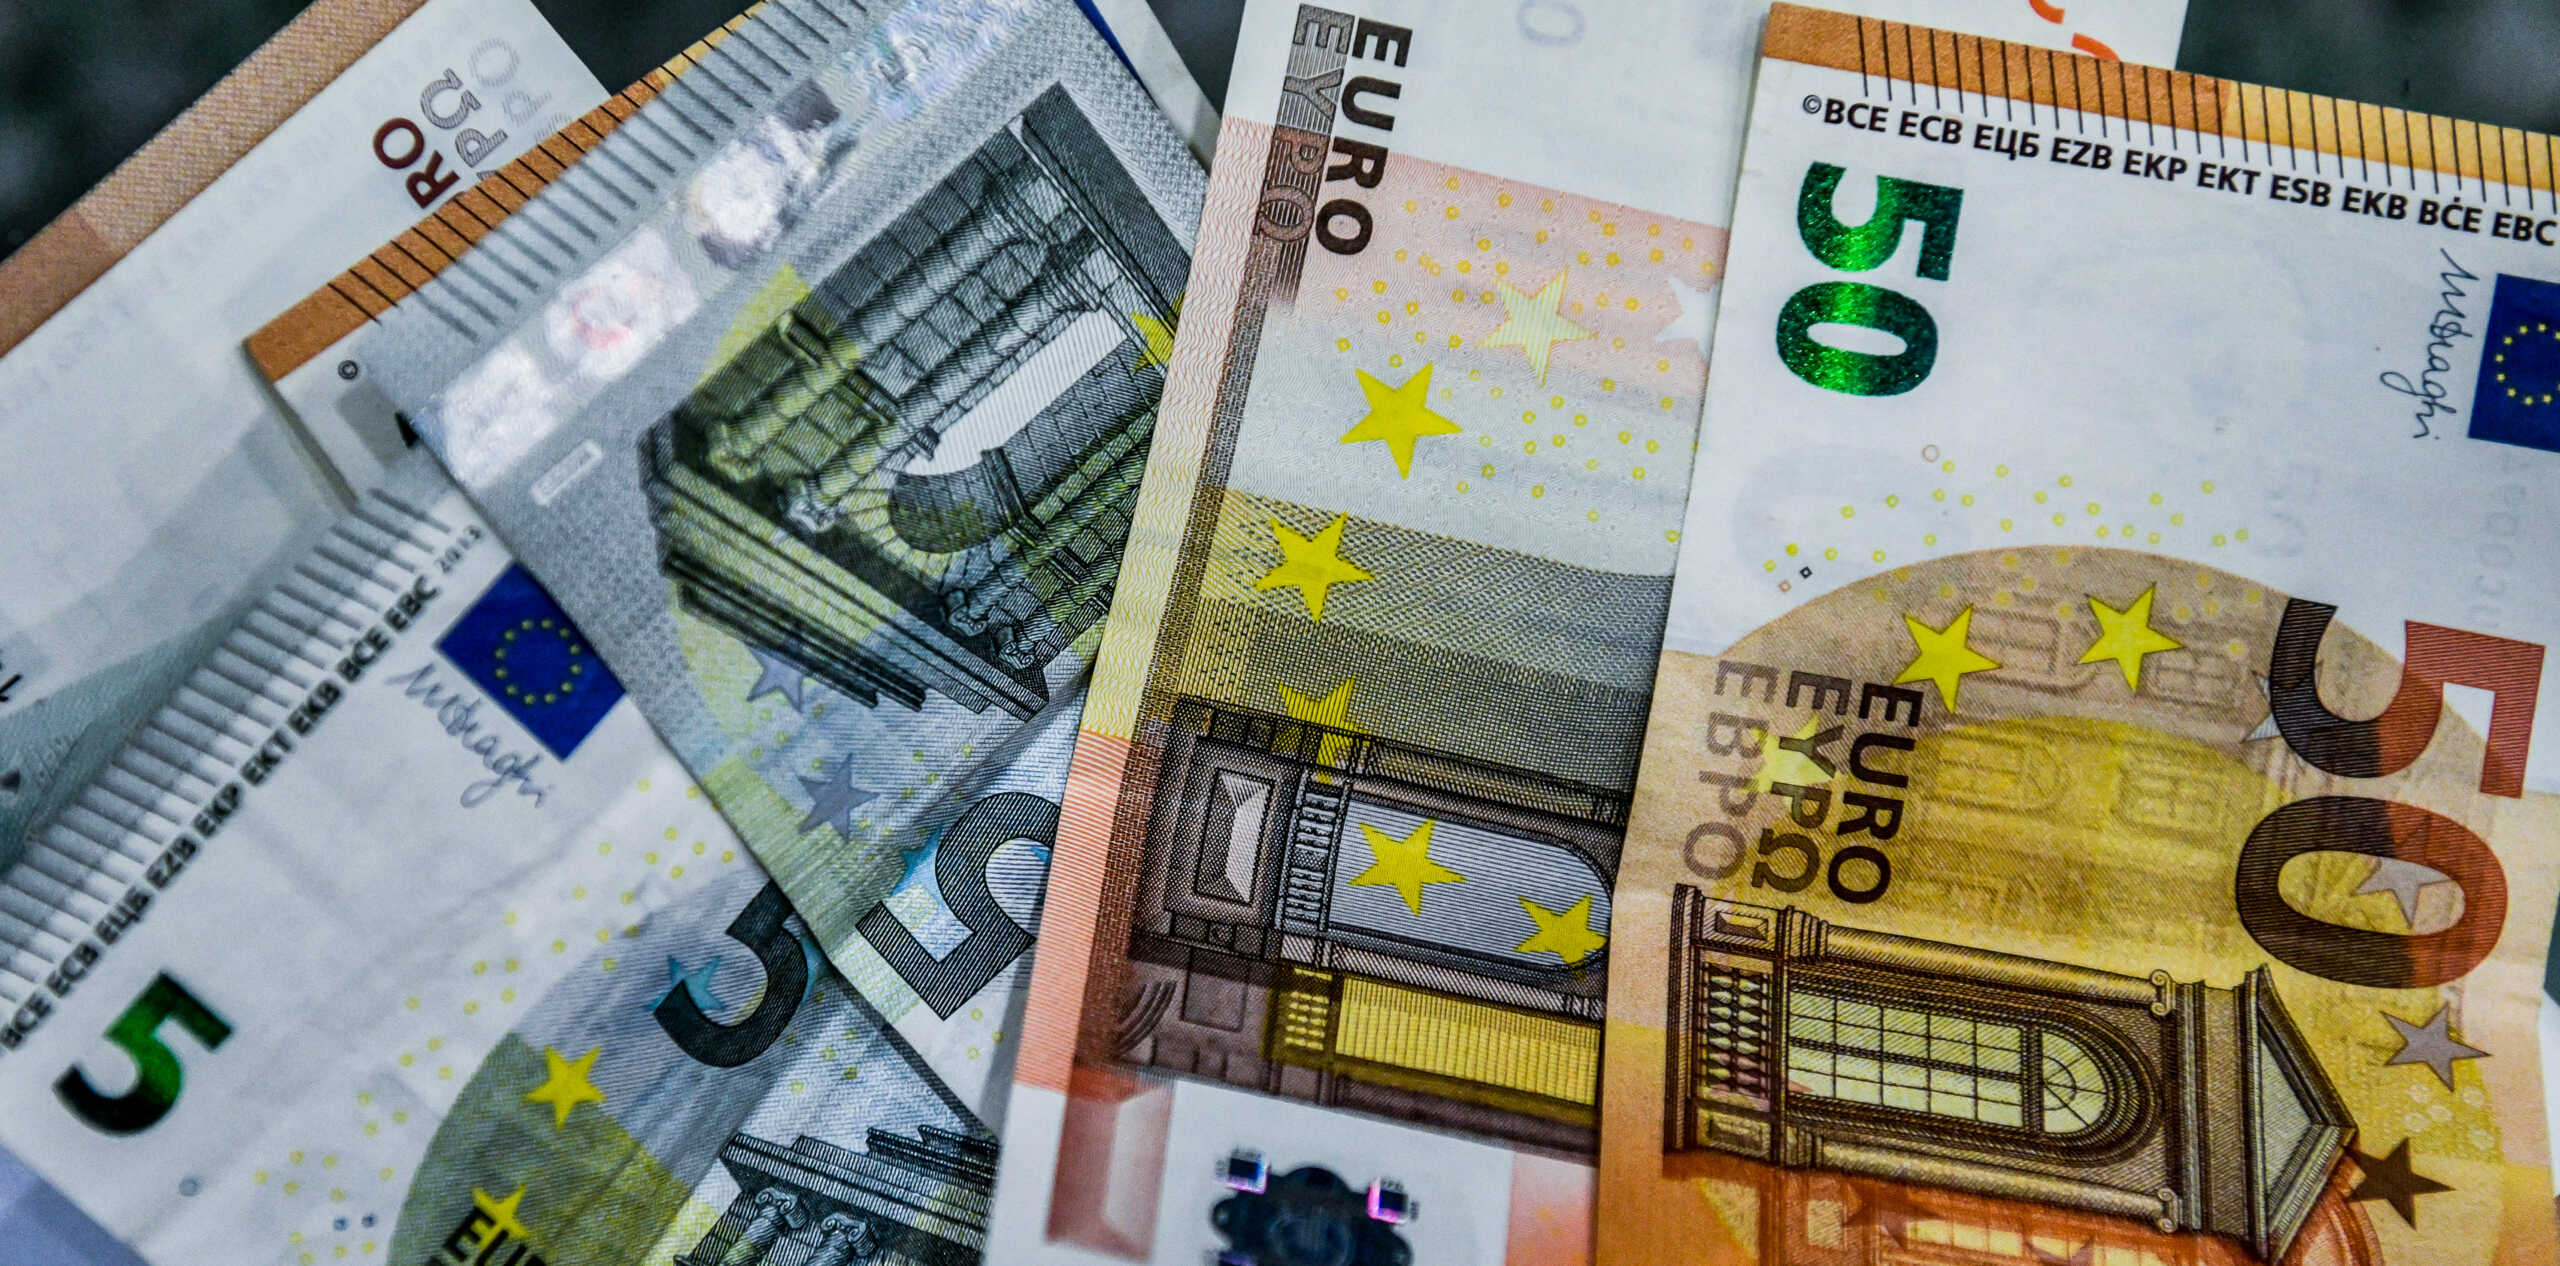 Σέρρες: Σύλληψη για τηλεφωνική απάτη με λεία 9.000 ευρώ και 10 χρυσές λίρες